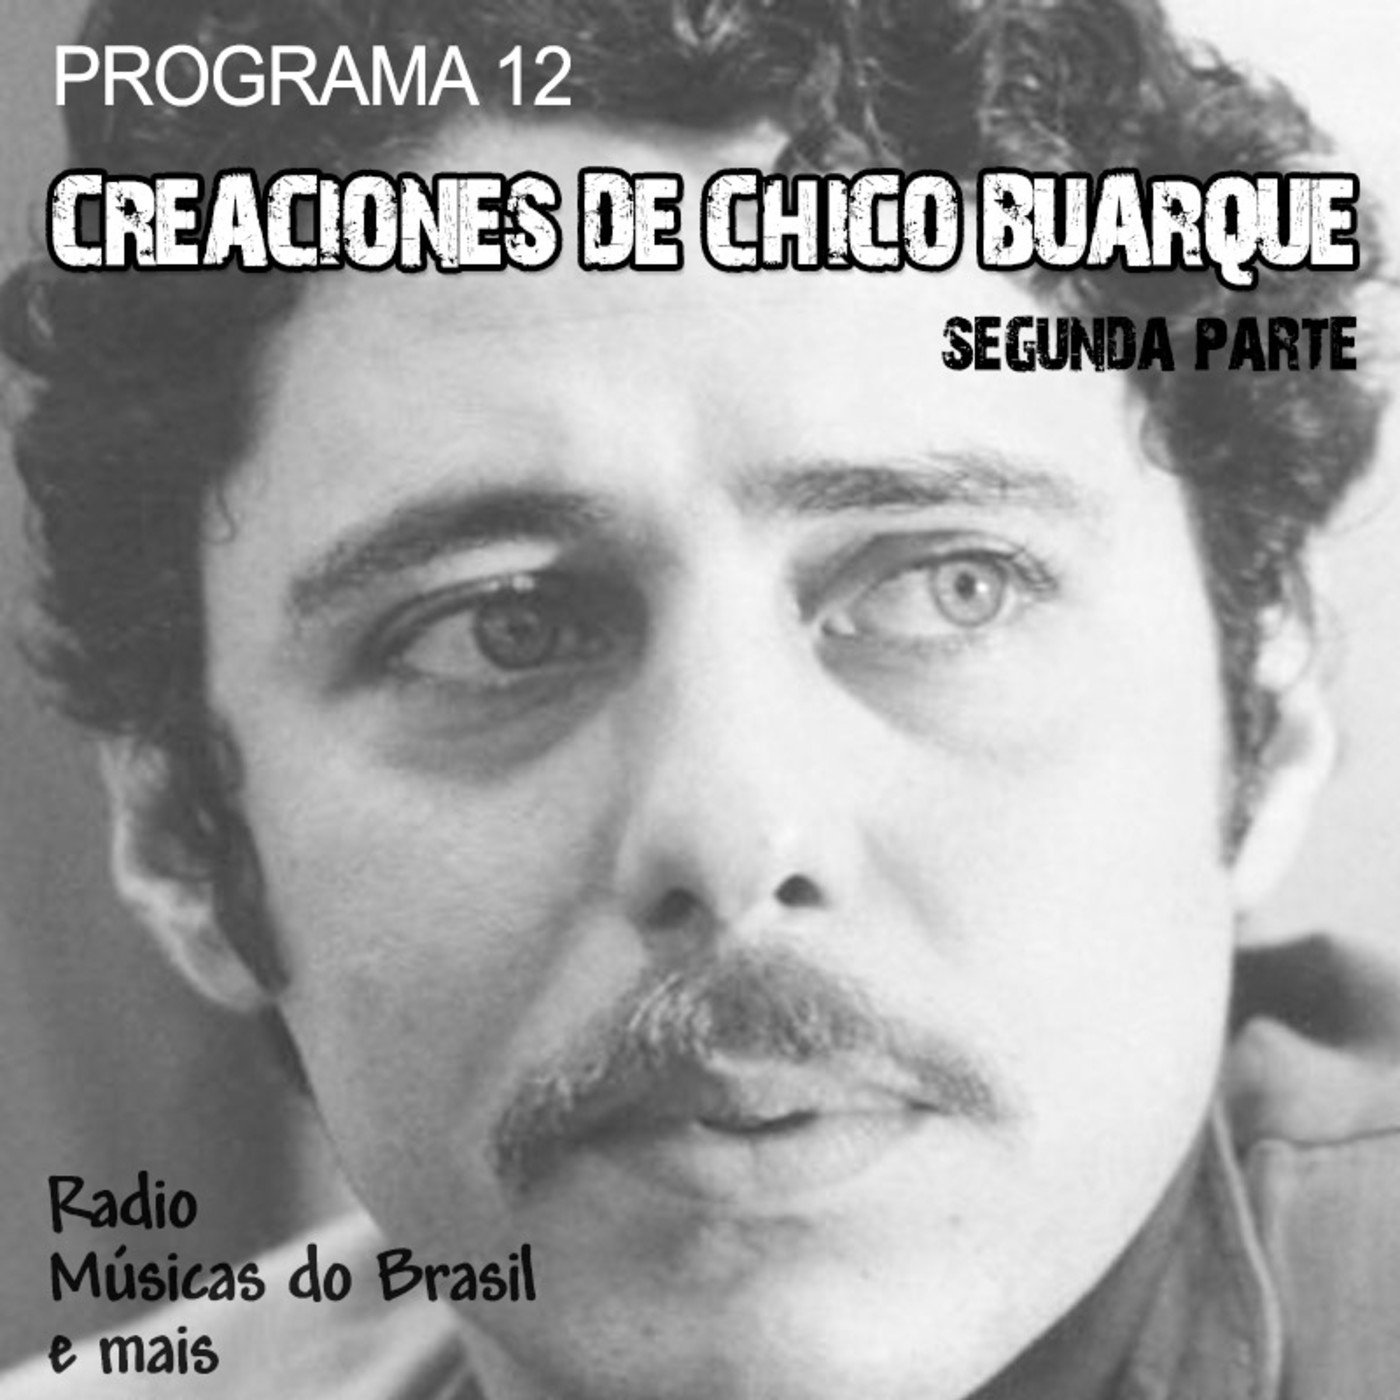 Programa 12. "Creaciones de Chico Buarque (II parte)" (Radio Musicas do Brasil e mais)